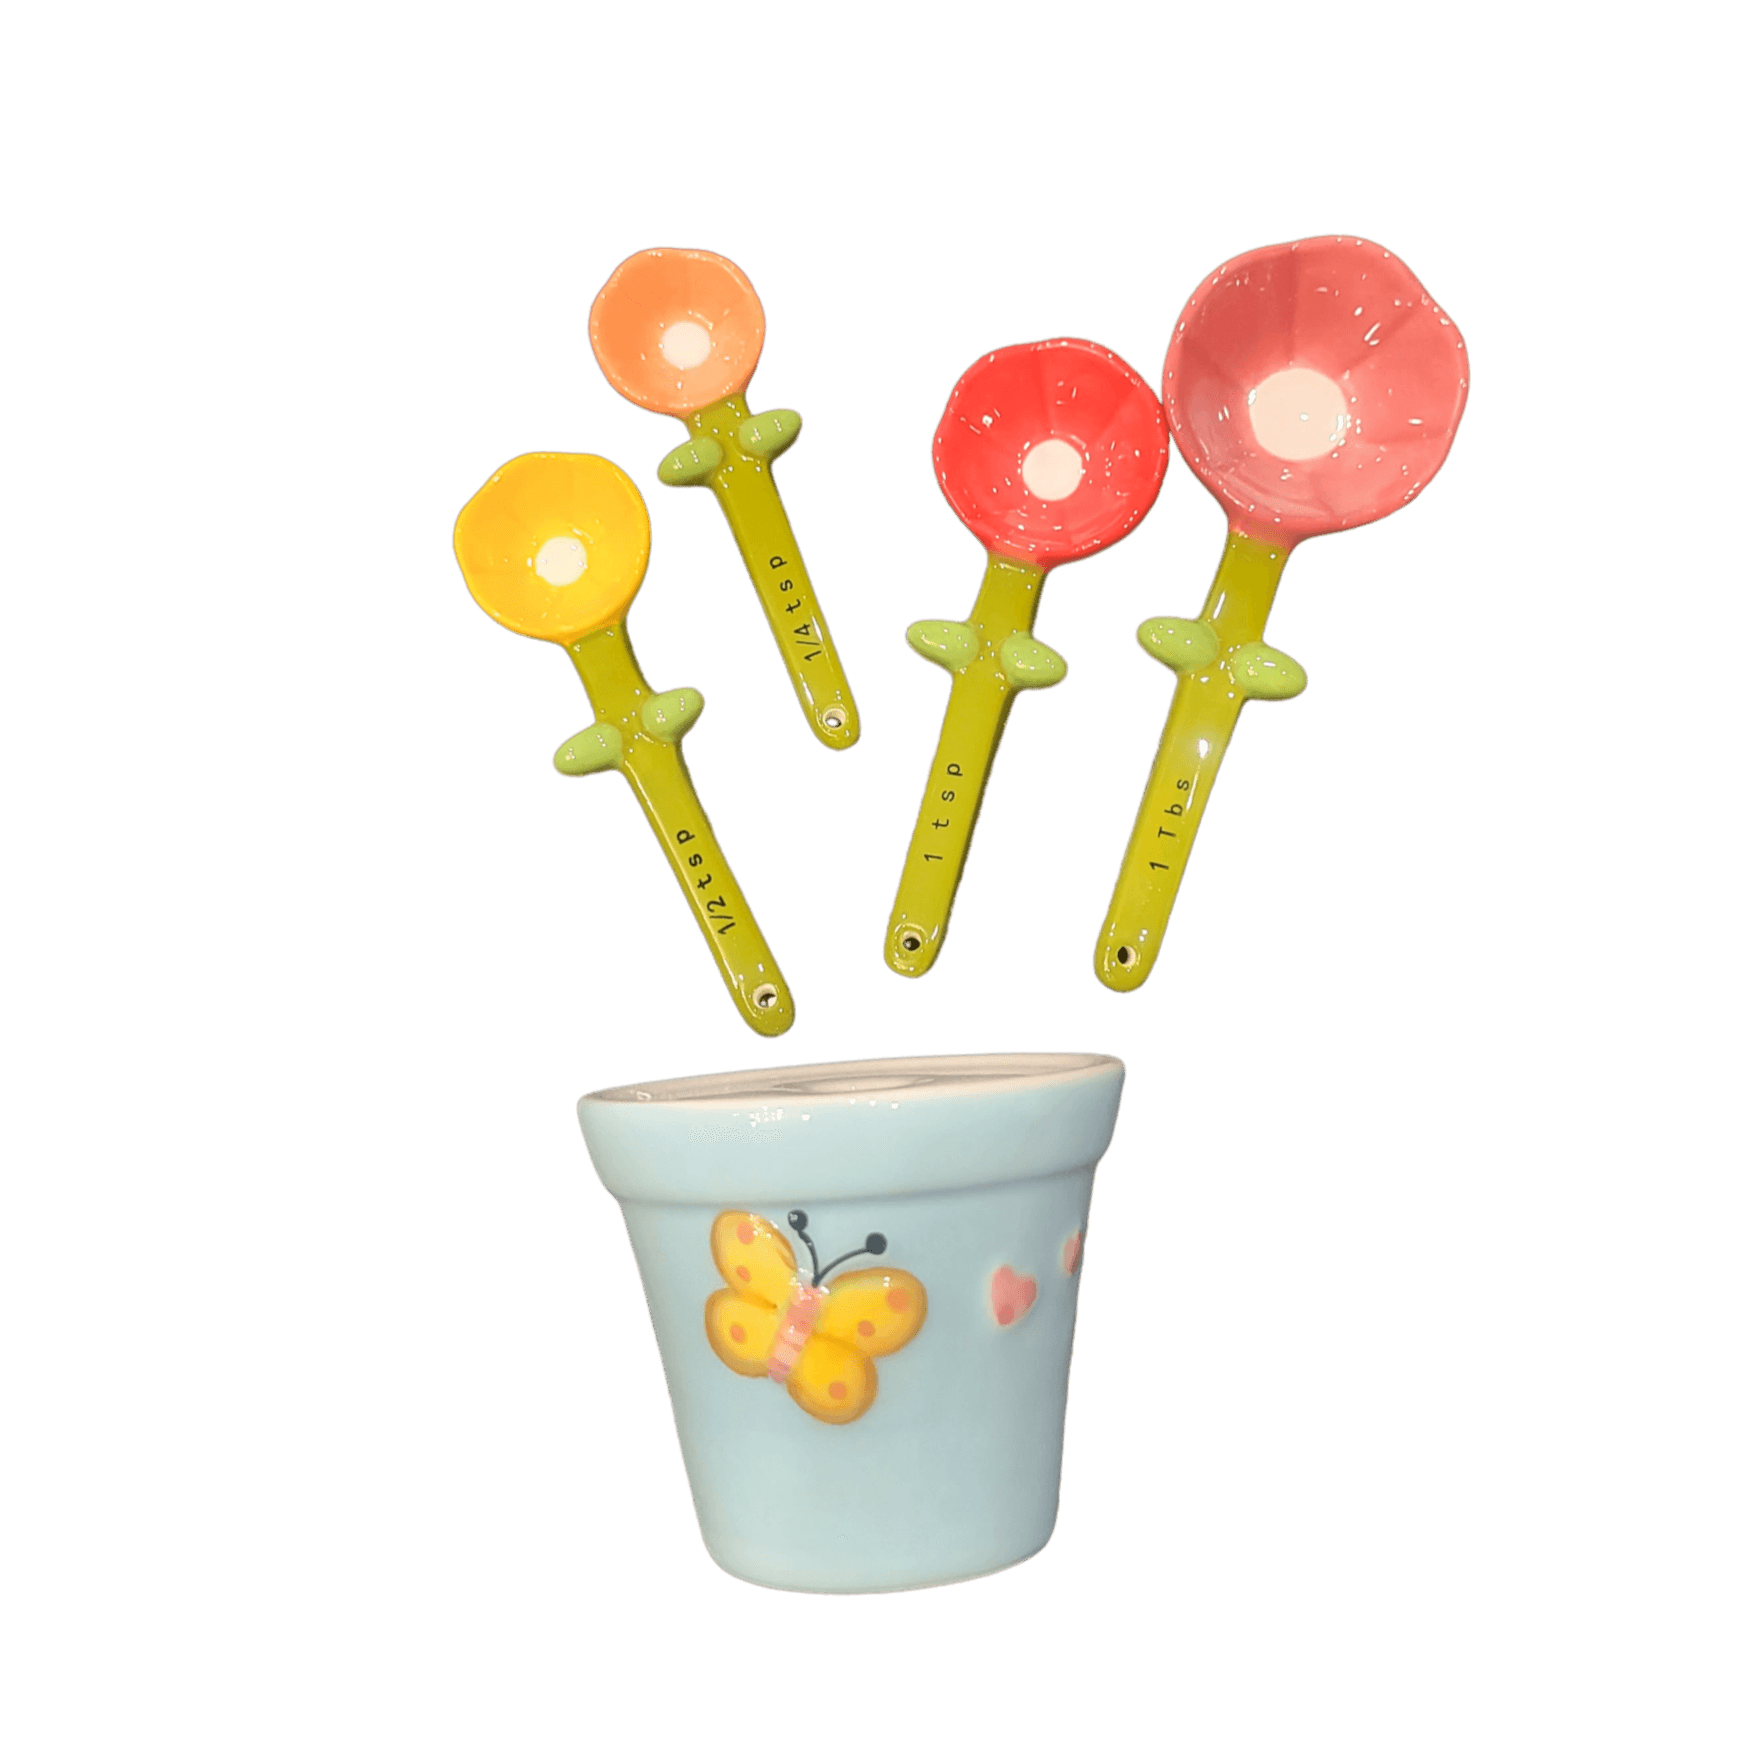  Ceramic Cactus Measuring Spoons set in pot organizer